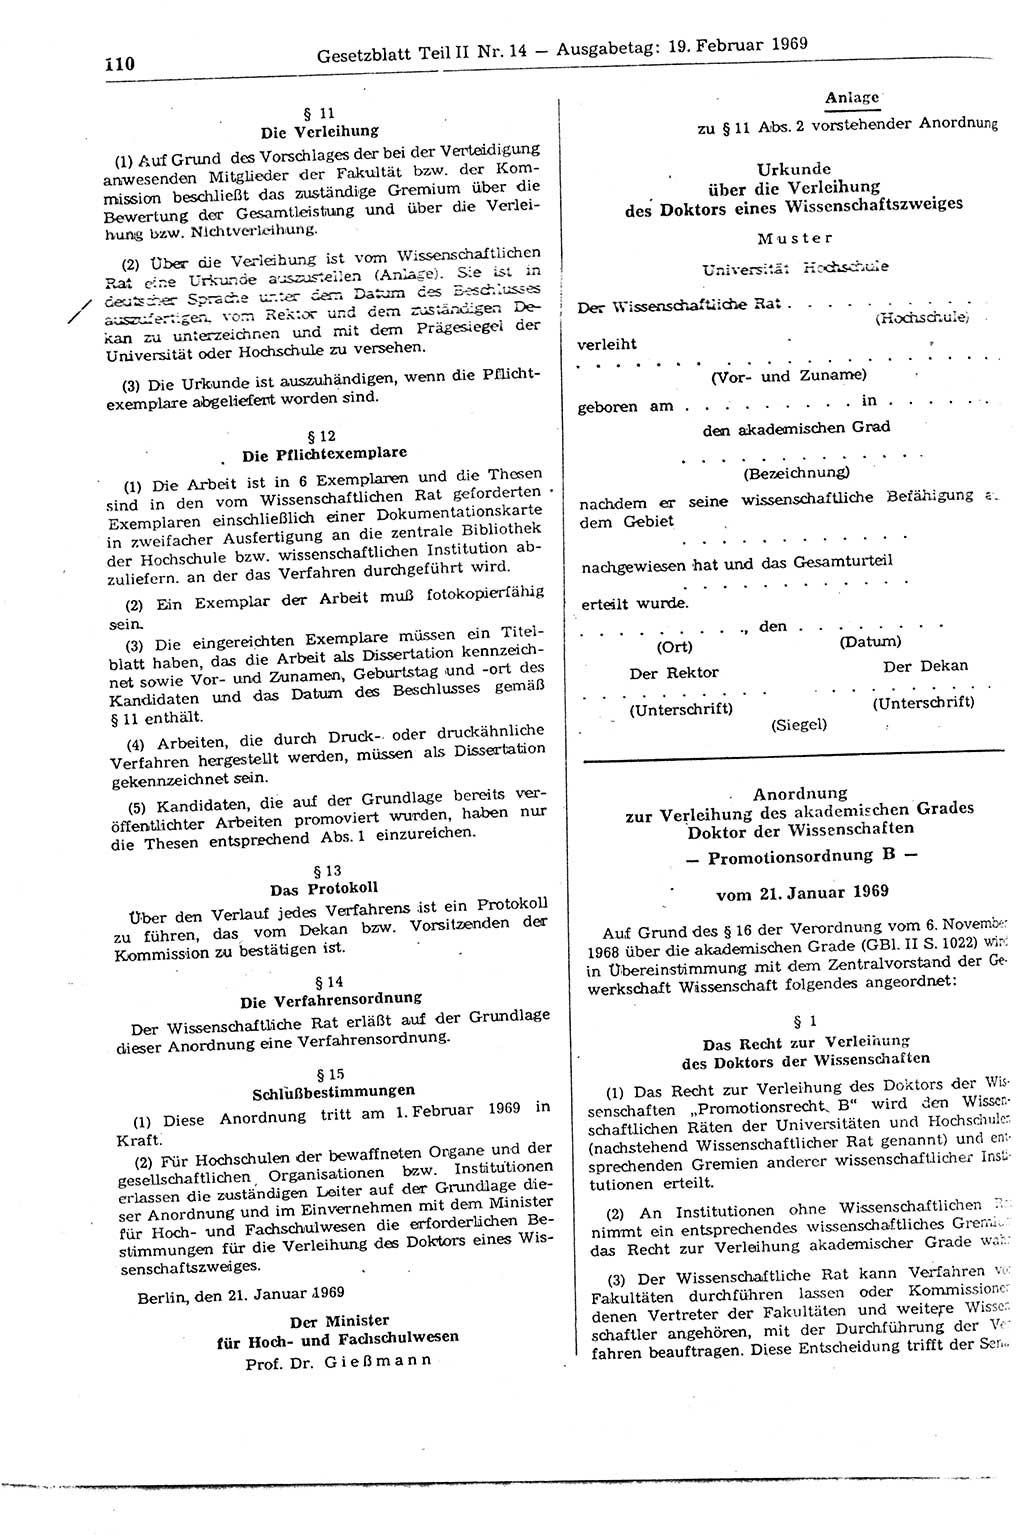 Gesetzblatt (GBl.) der Deutschen Demokratischen Republik (DDR) Teil ⅠⅠ 1969, Seite 110 (GBl. DDR ⅠⅠ 1969, S. 110)